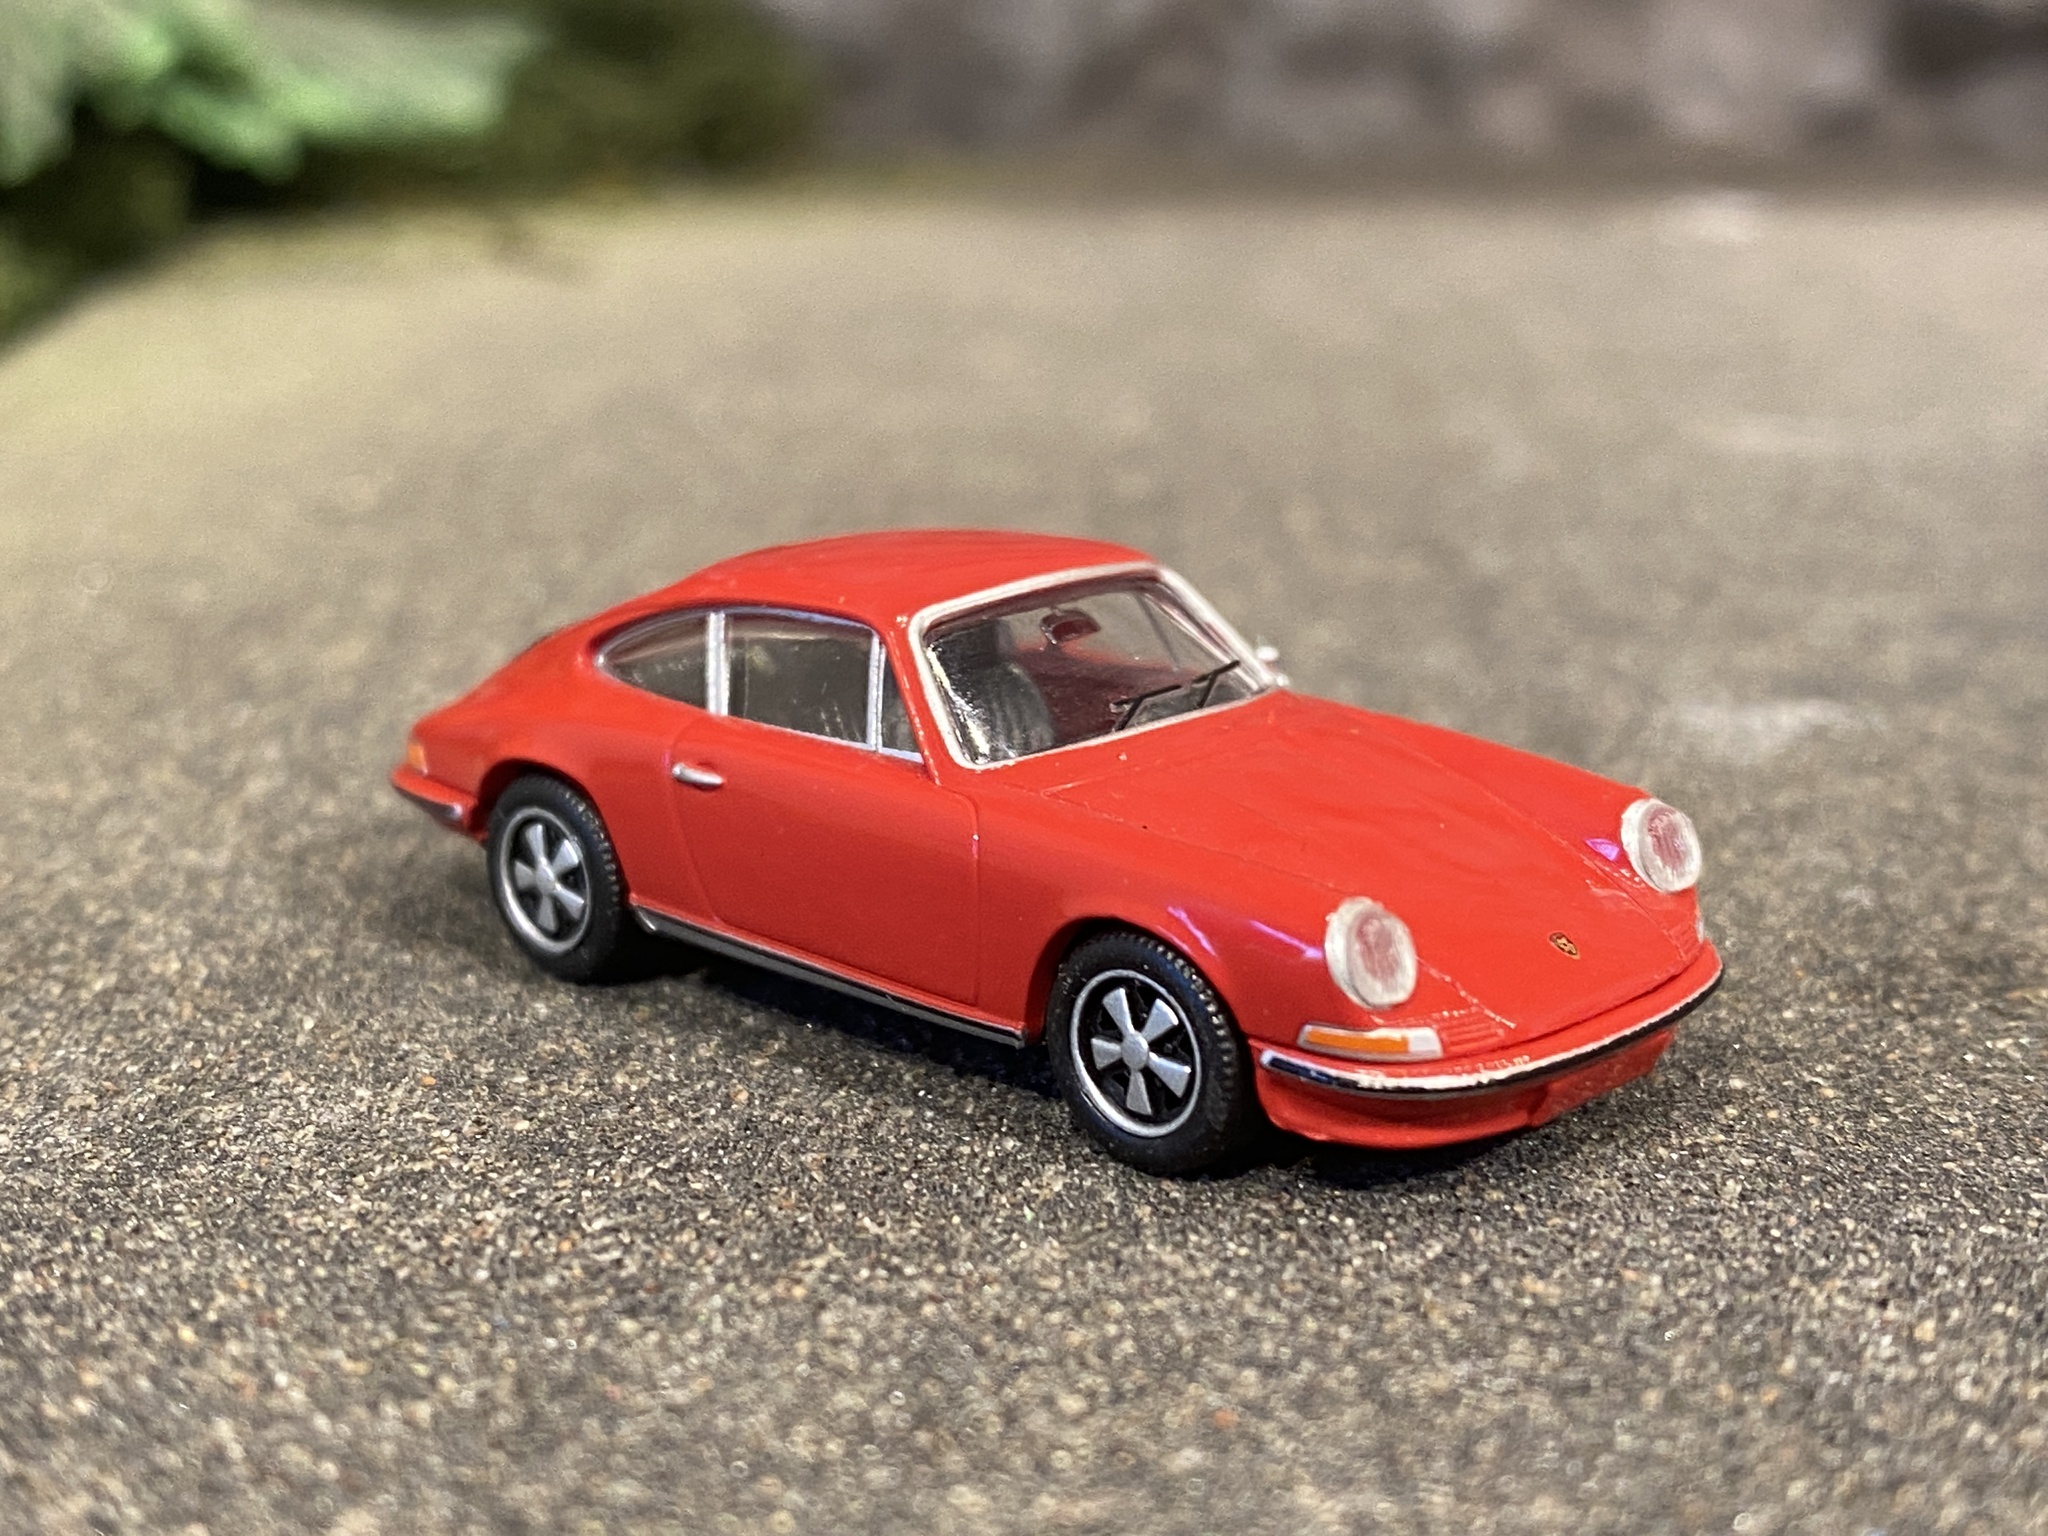 Skala 1/87 Porsche 911, Röd från Brekina